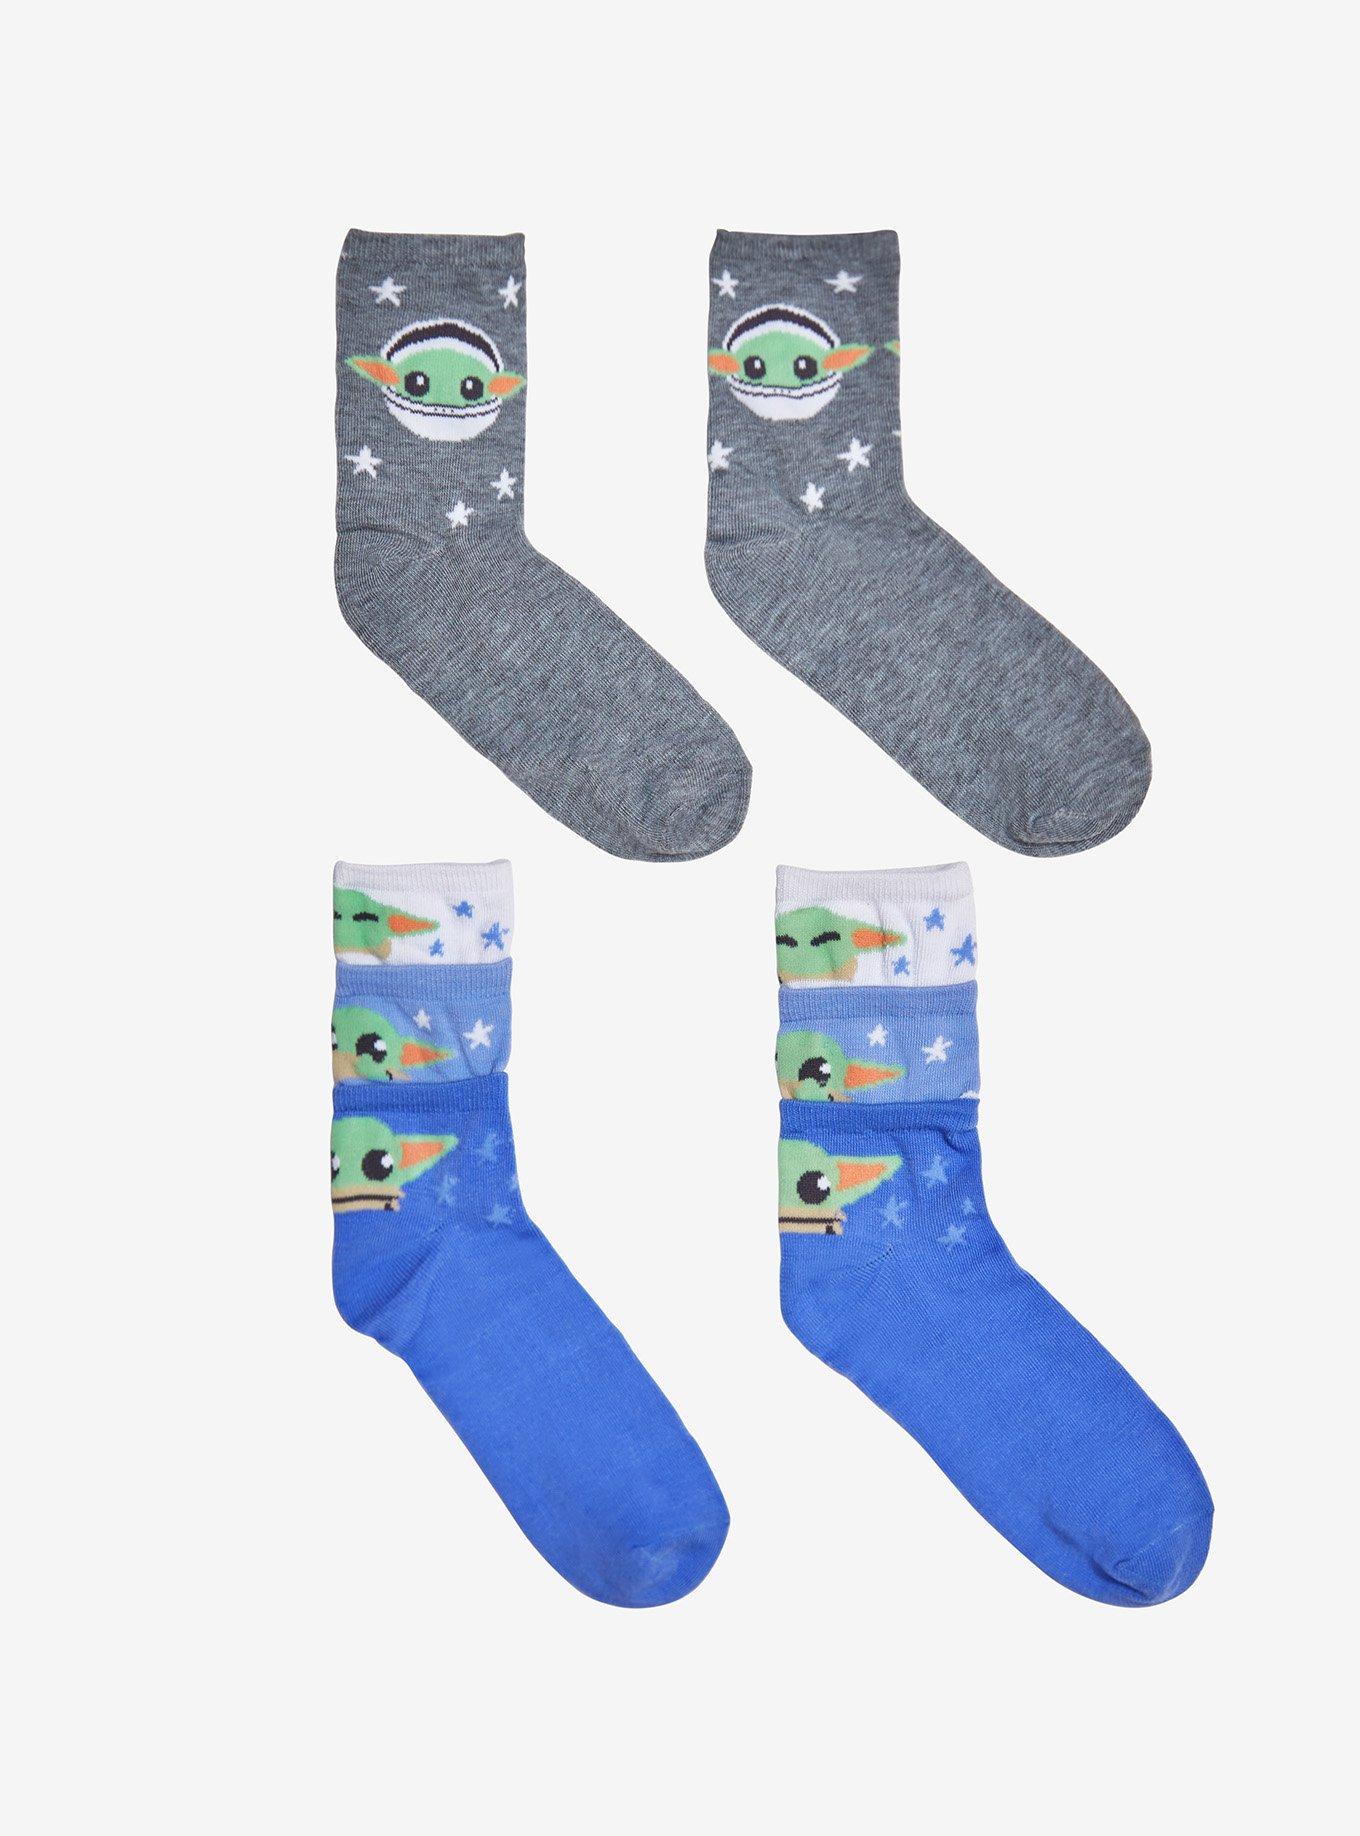 Sk8 The Lnfinity Fashion Style Forever Socks - Men's Socks